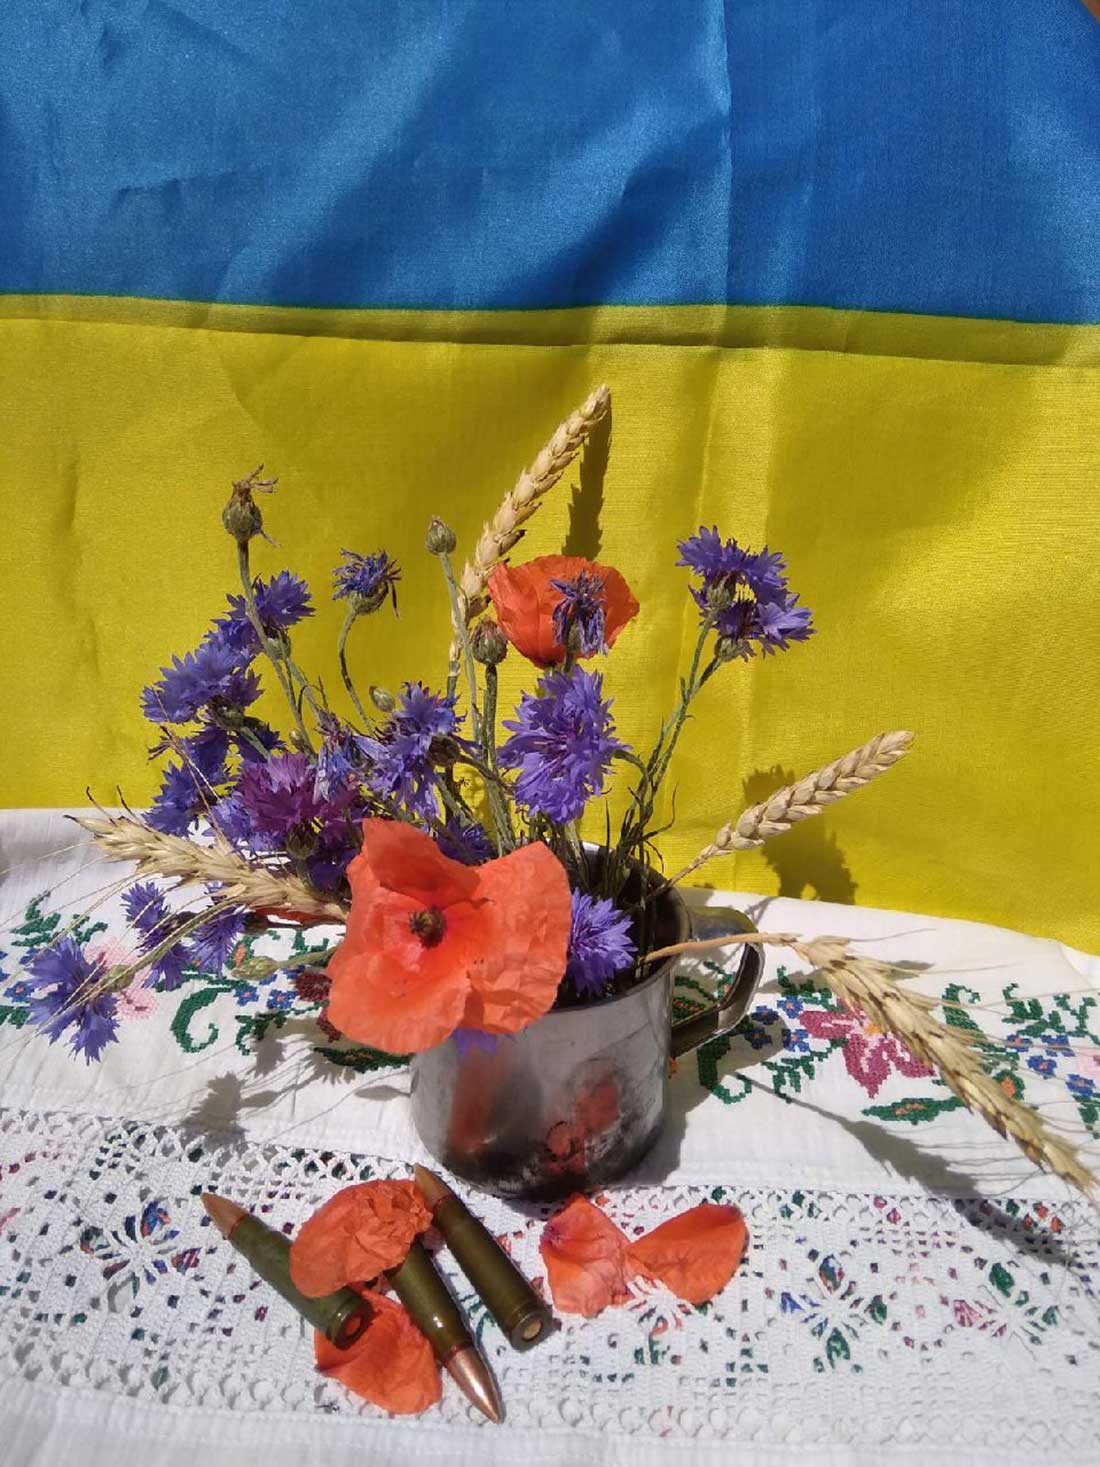 Діти з громад Кіровоградщини взяли участь у конкурсі флористики